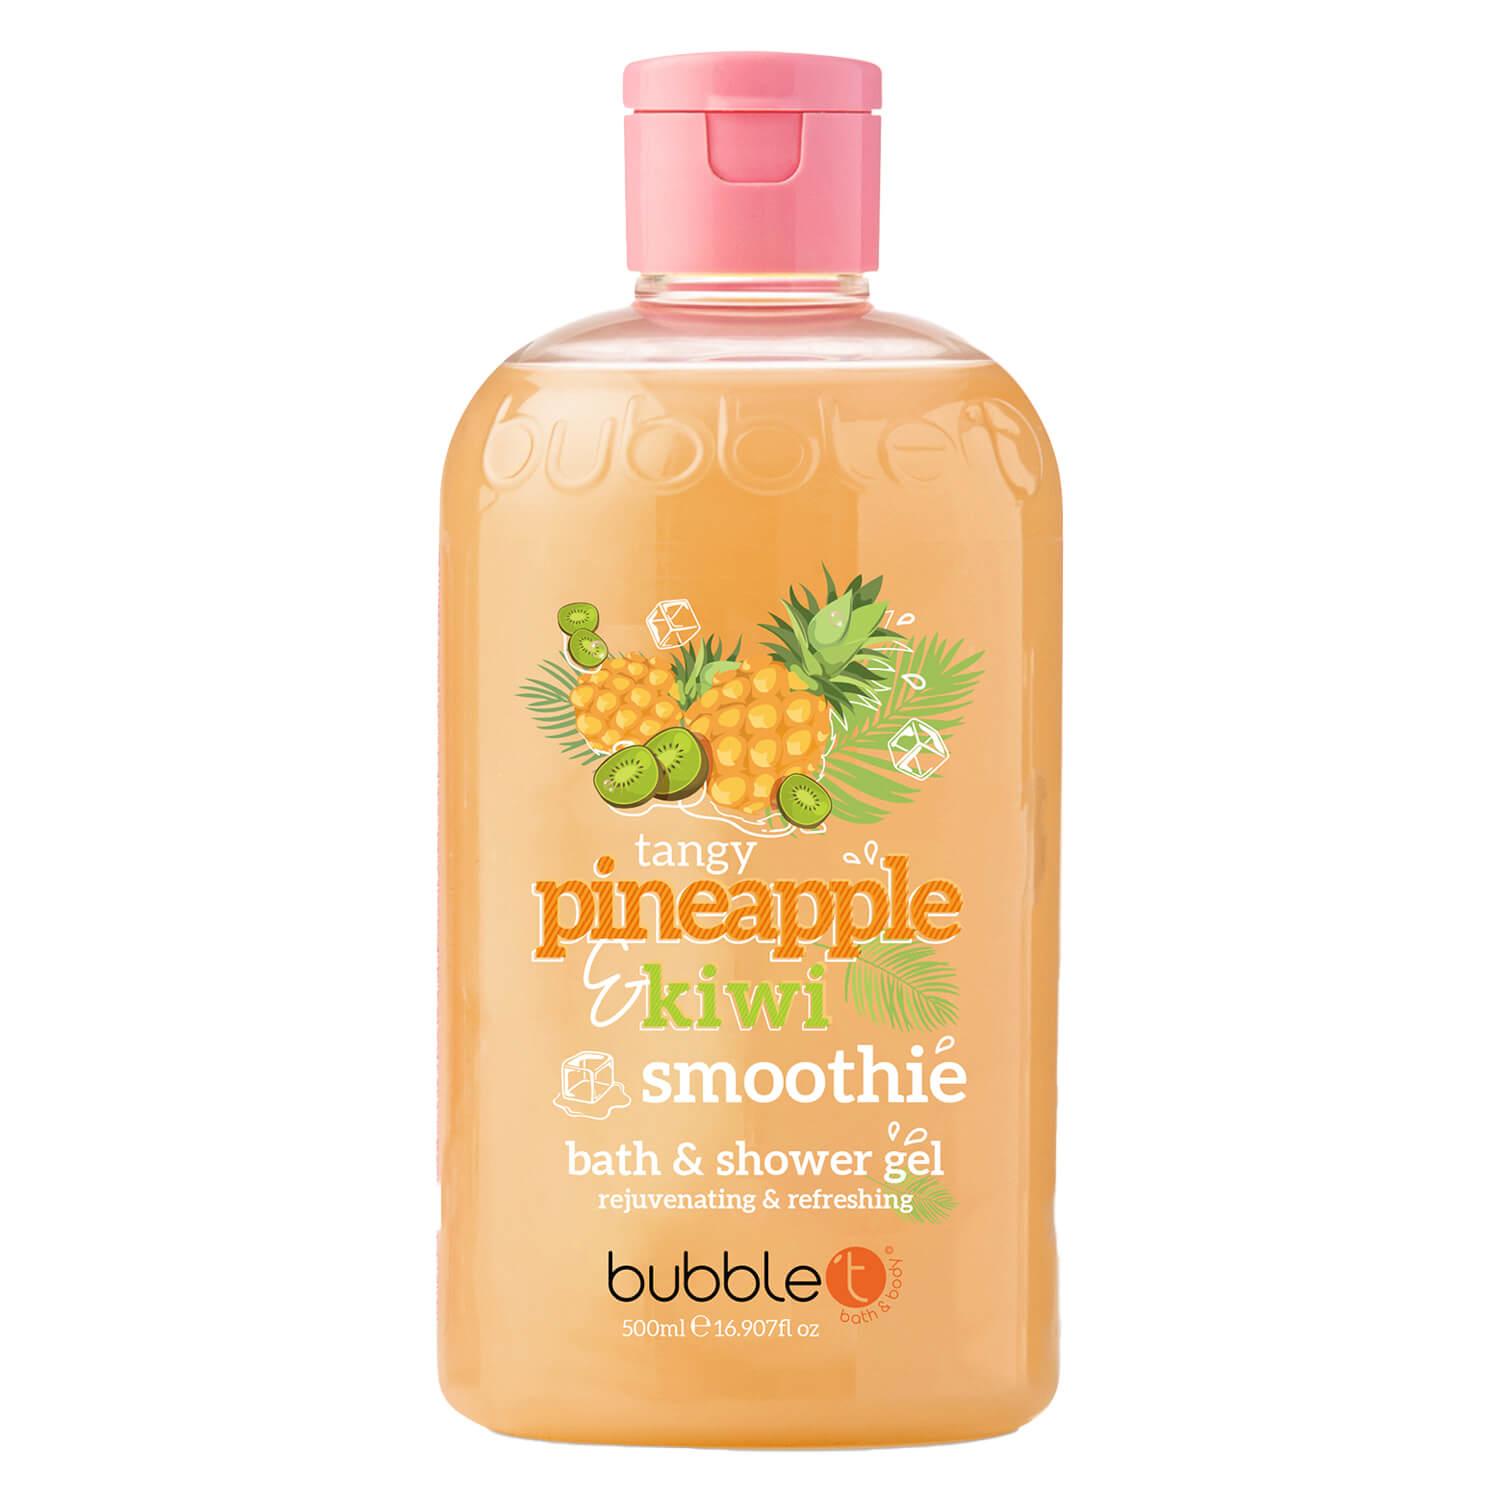 bubble t - Bath & Shower Gel Pineapple & Kiwi